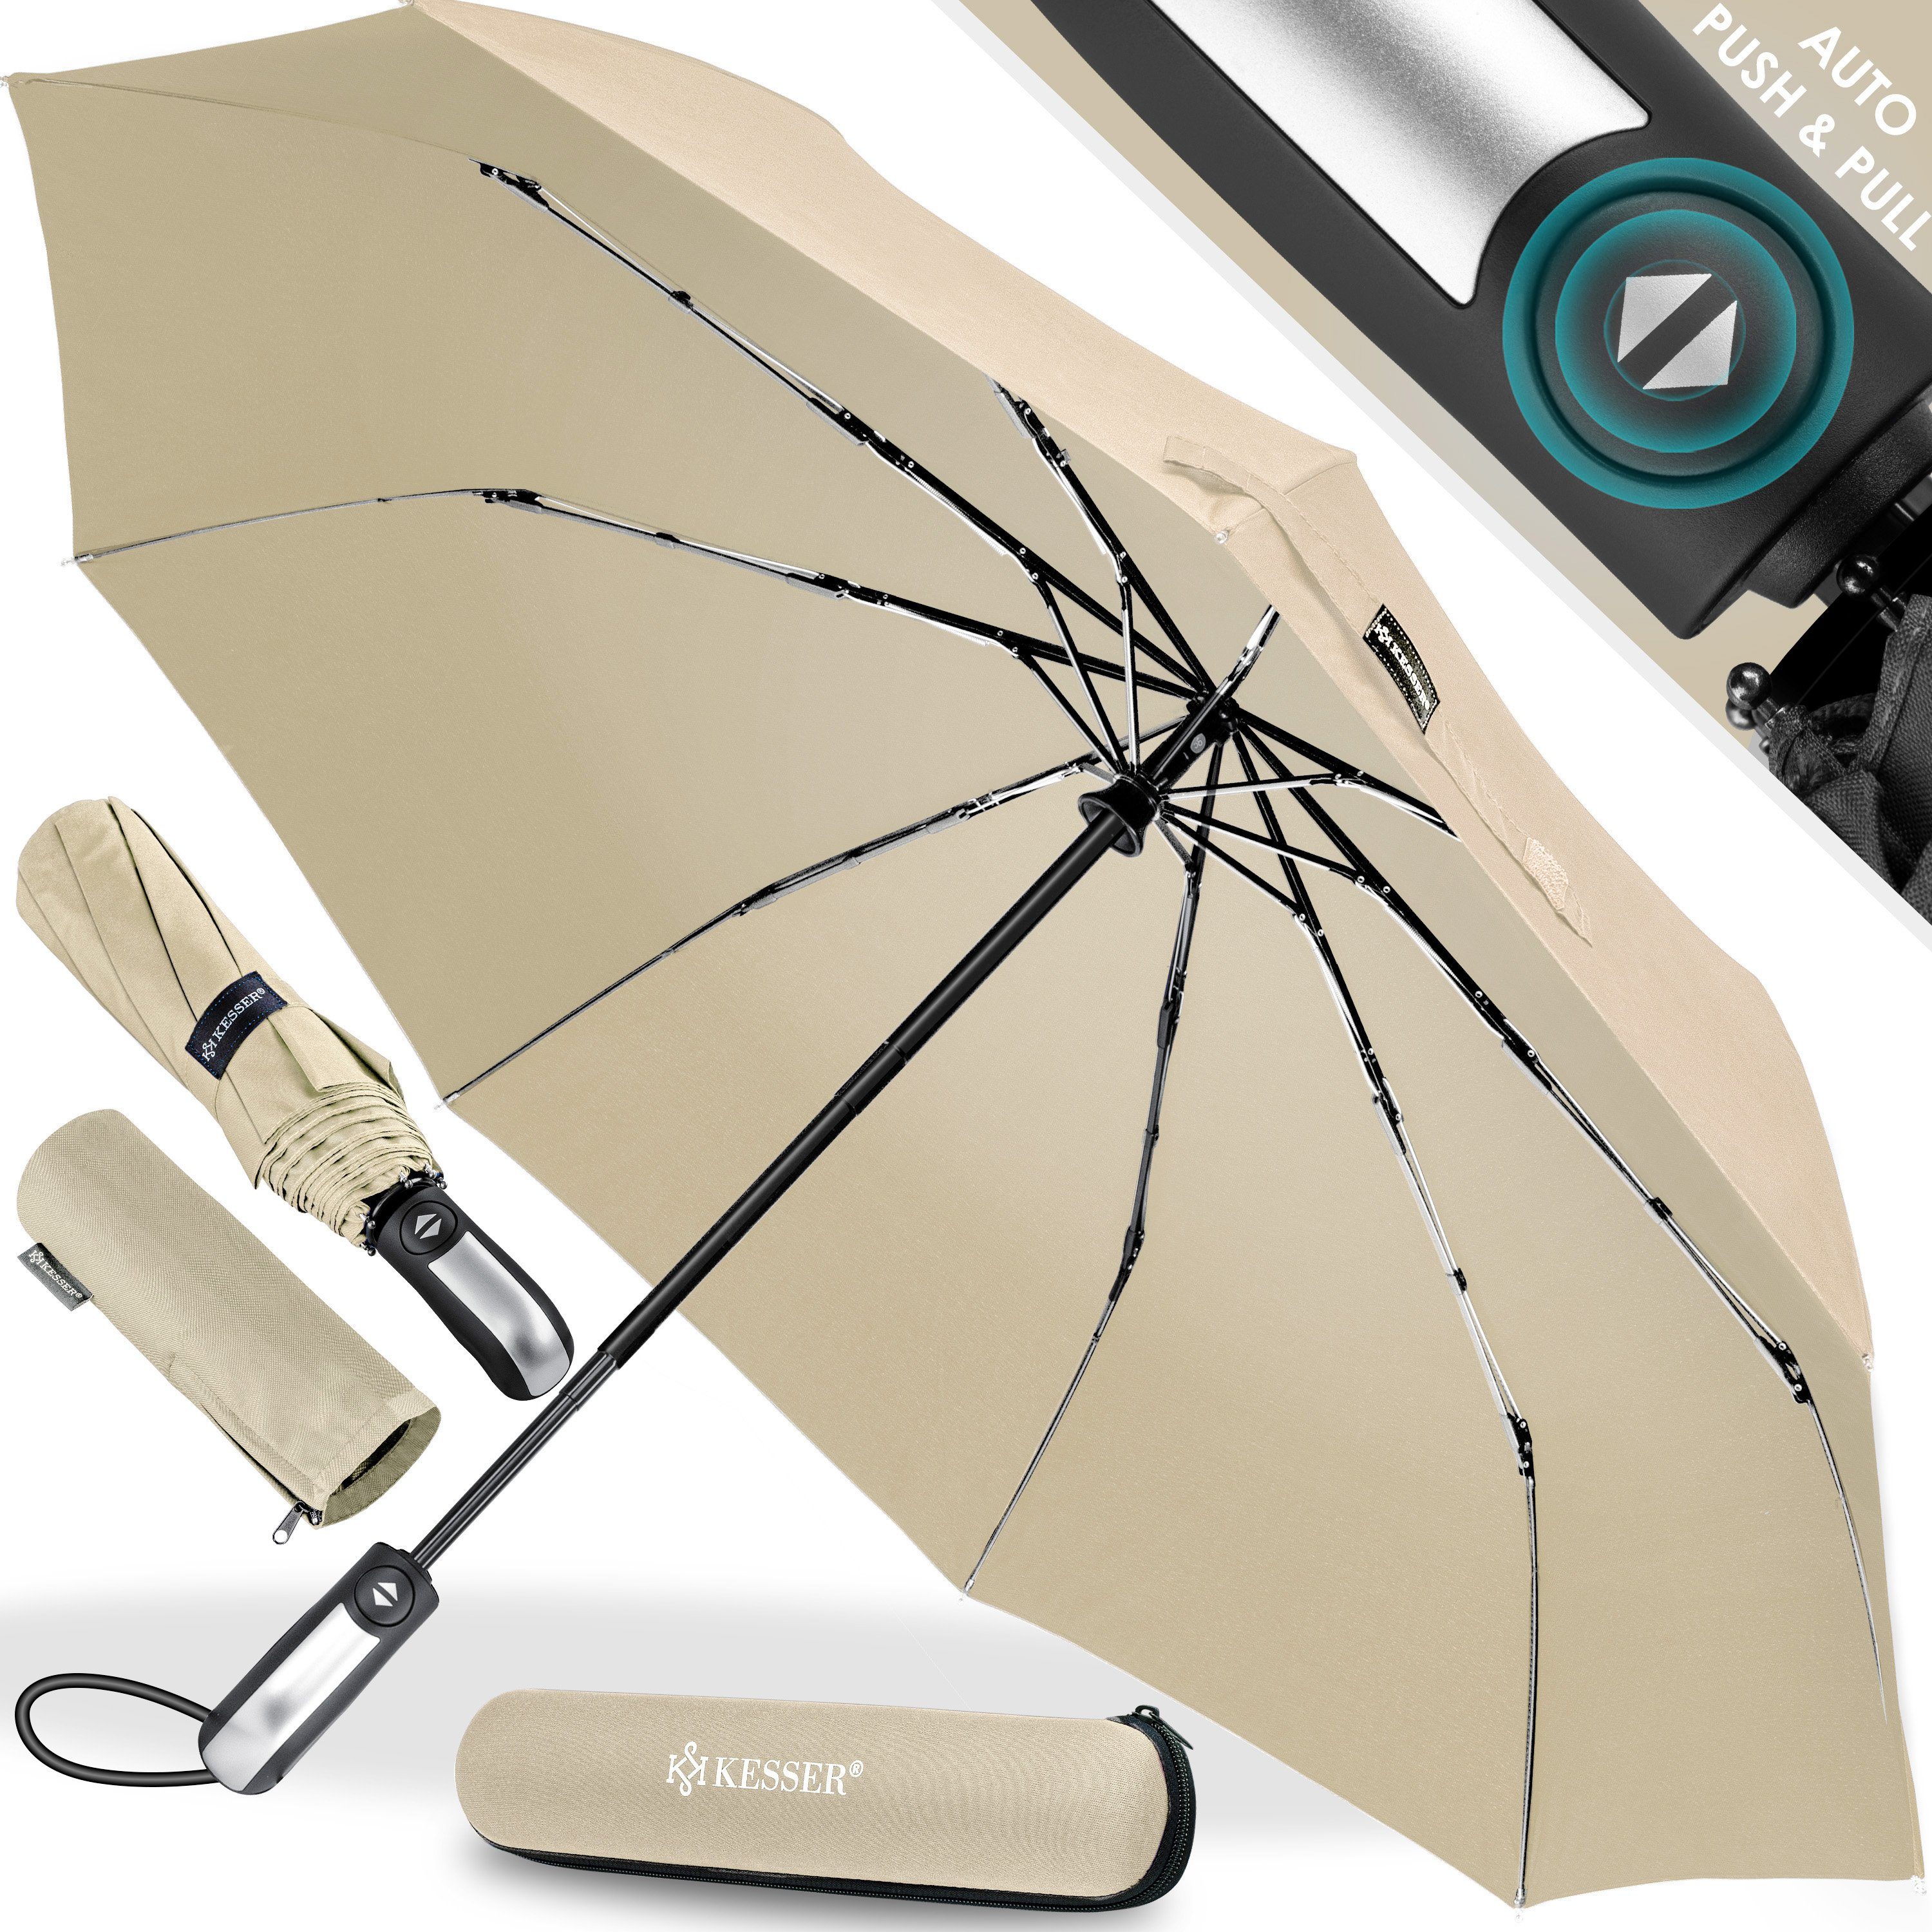 KESSER Taschenregenschirm, Regenschutz, Schirm sturmfest bis 150 km/h -  inkl. Schirm-Tasche & Reise-Etui - Taschenschirm mit Auf-Zu-Automatik,  klein - leicht & kompakt - Teflon-Beschichtung